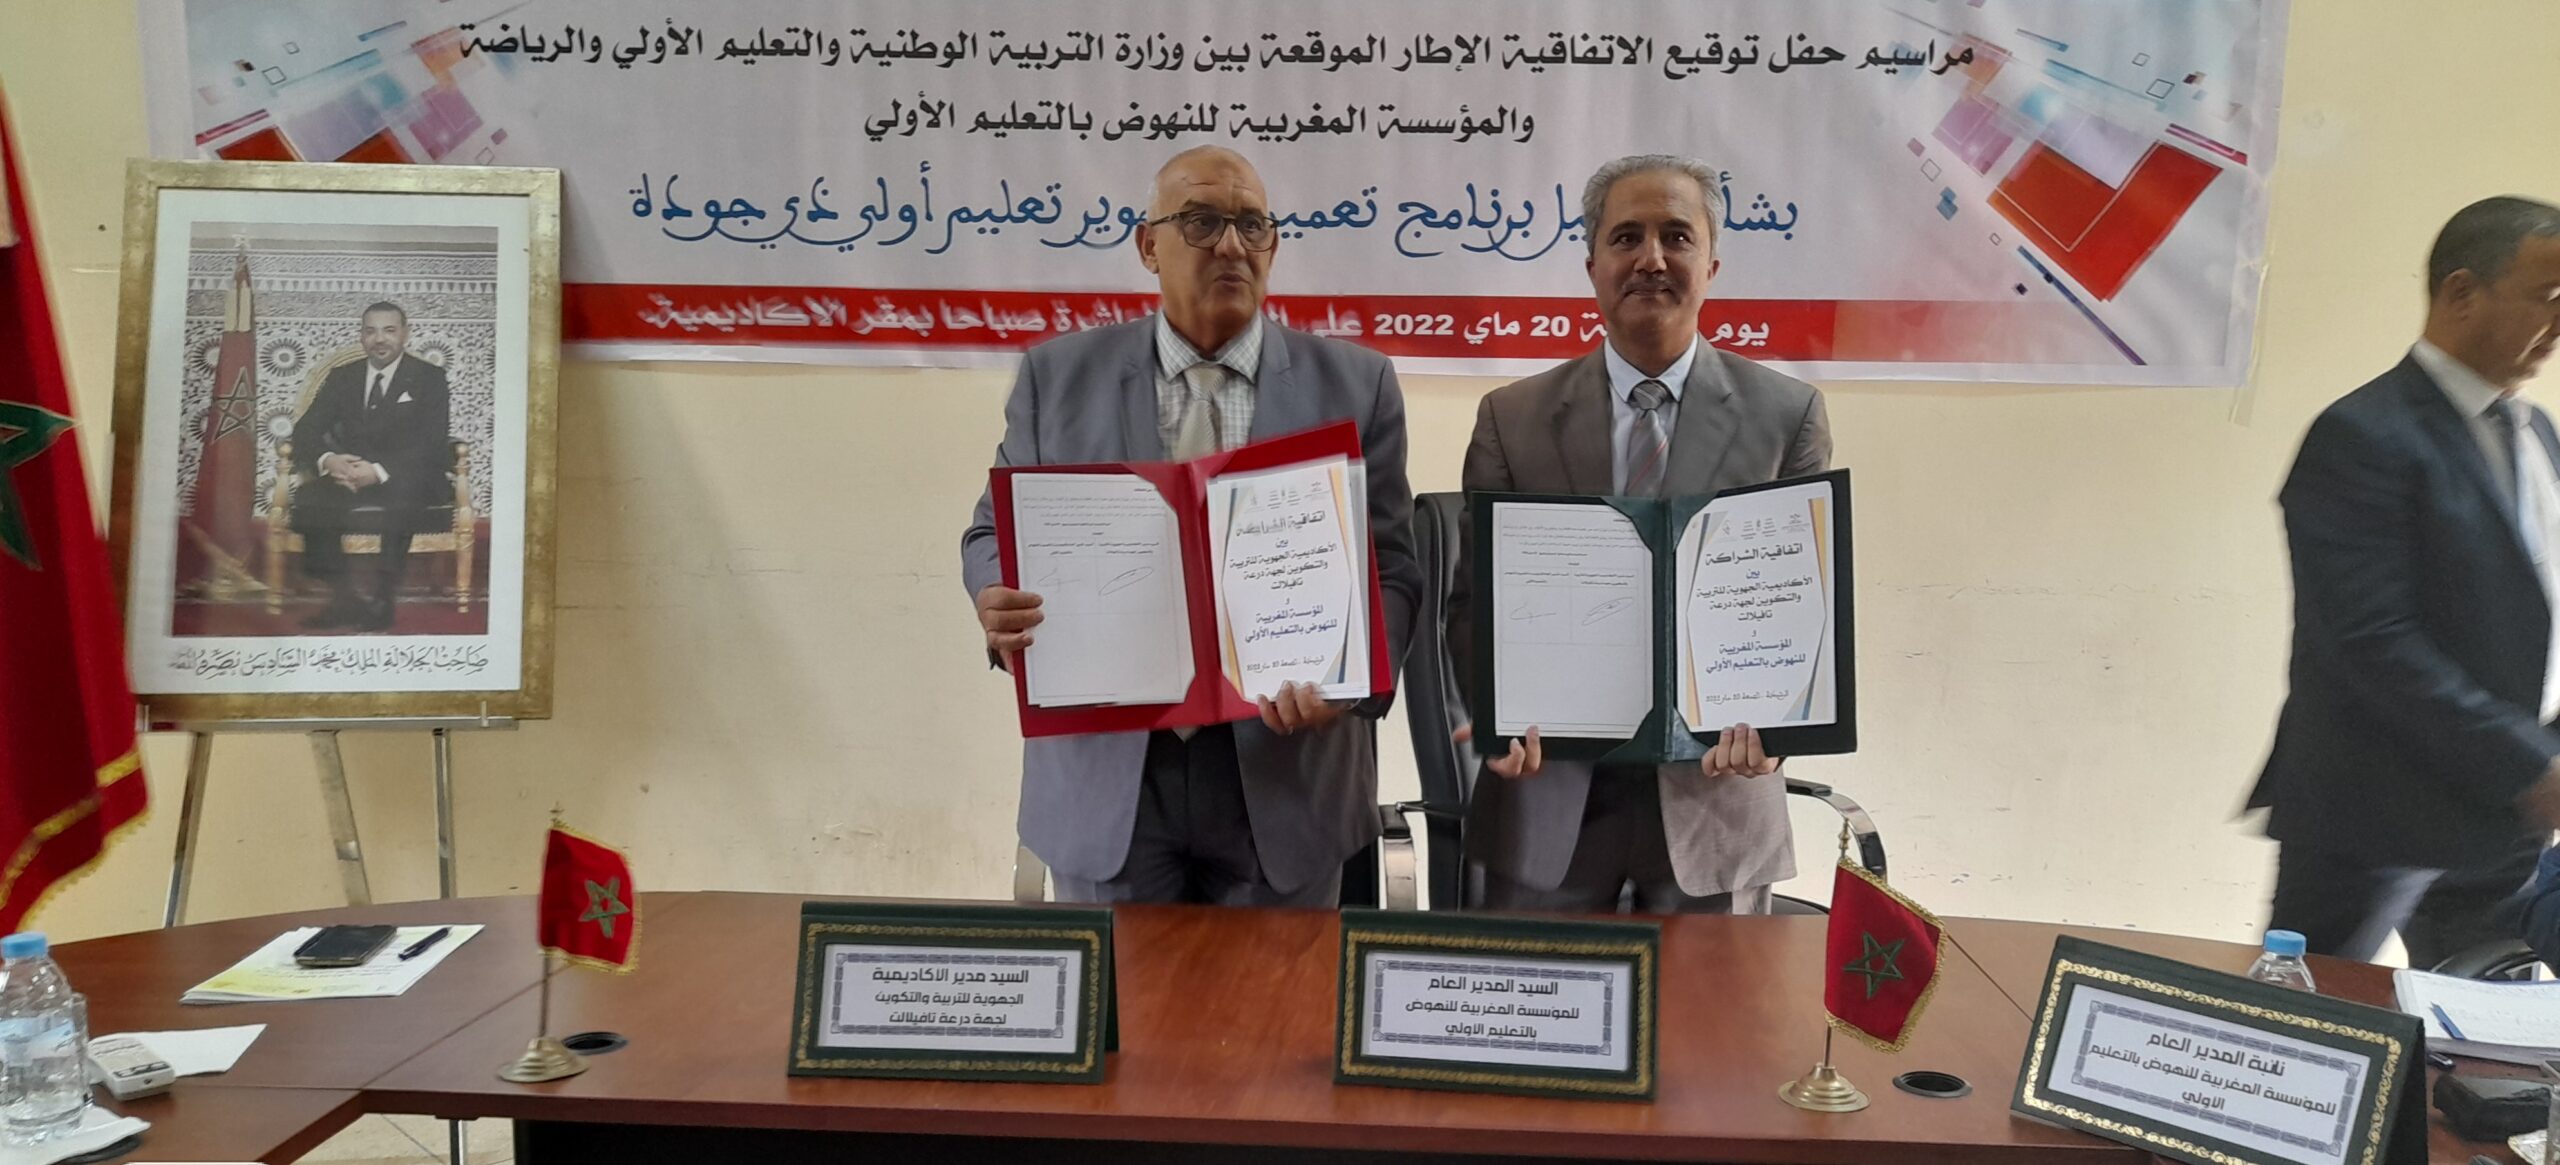 اتفاقية شراكة بين أكاديمية التعليم ومؤسسة النهوض بالتعليم الأولي بالرشيدية